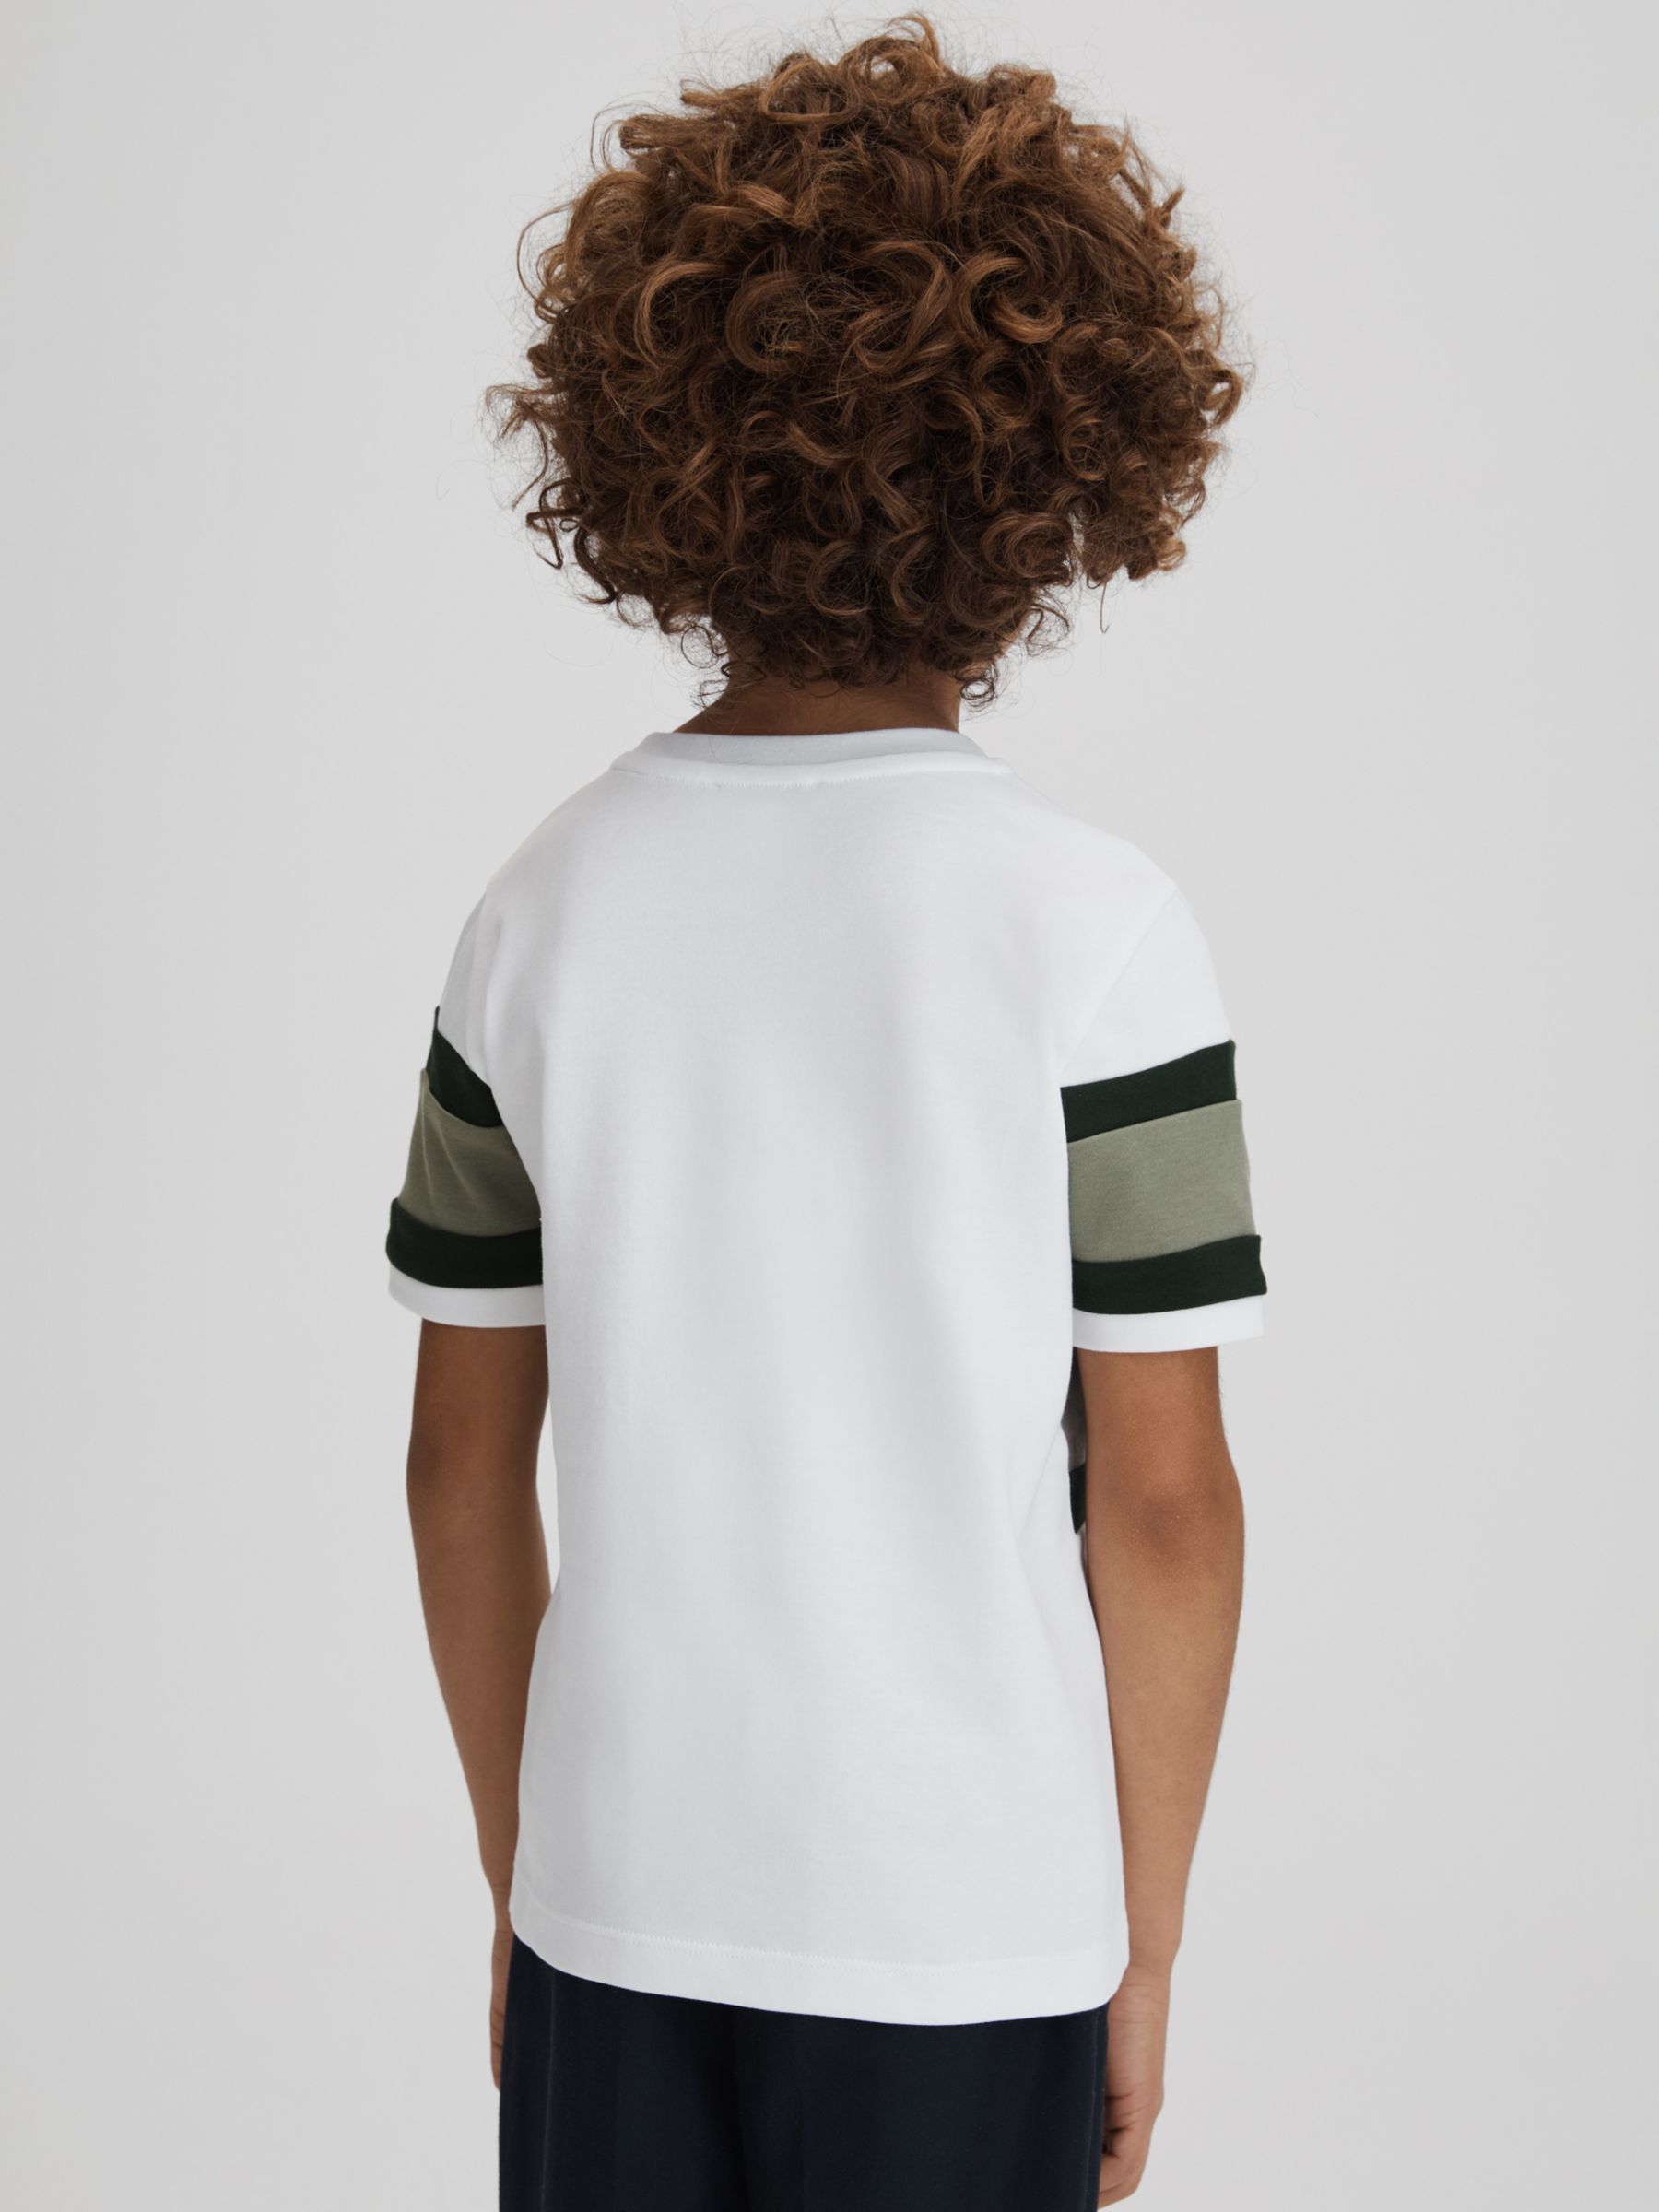 Reiss Kids' Auckland Short Sleeve Crew Neck T-Shirt, Green, 7-8 years